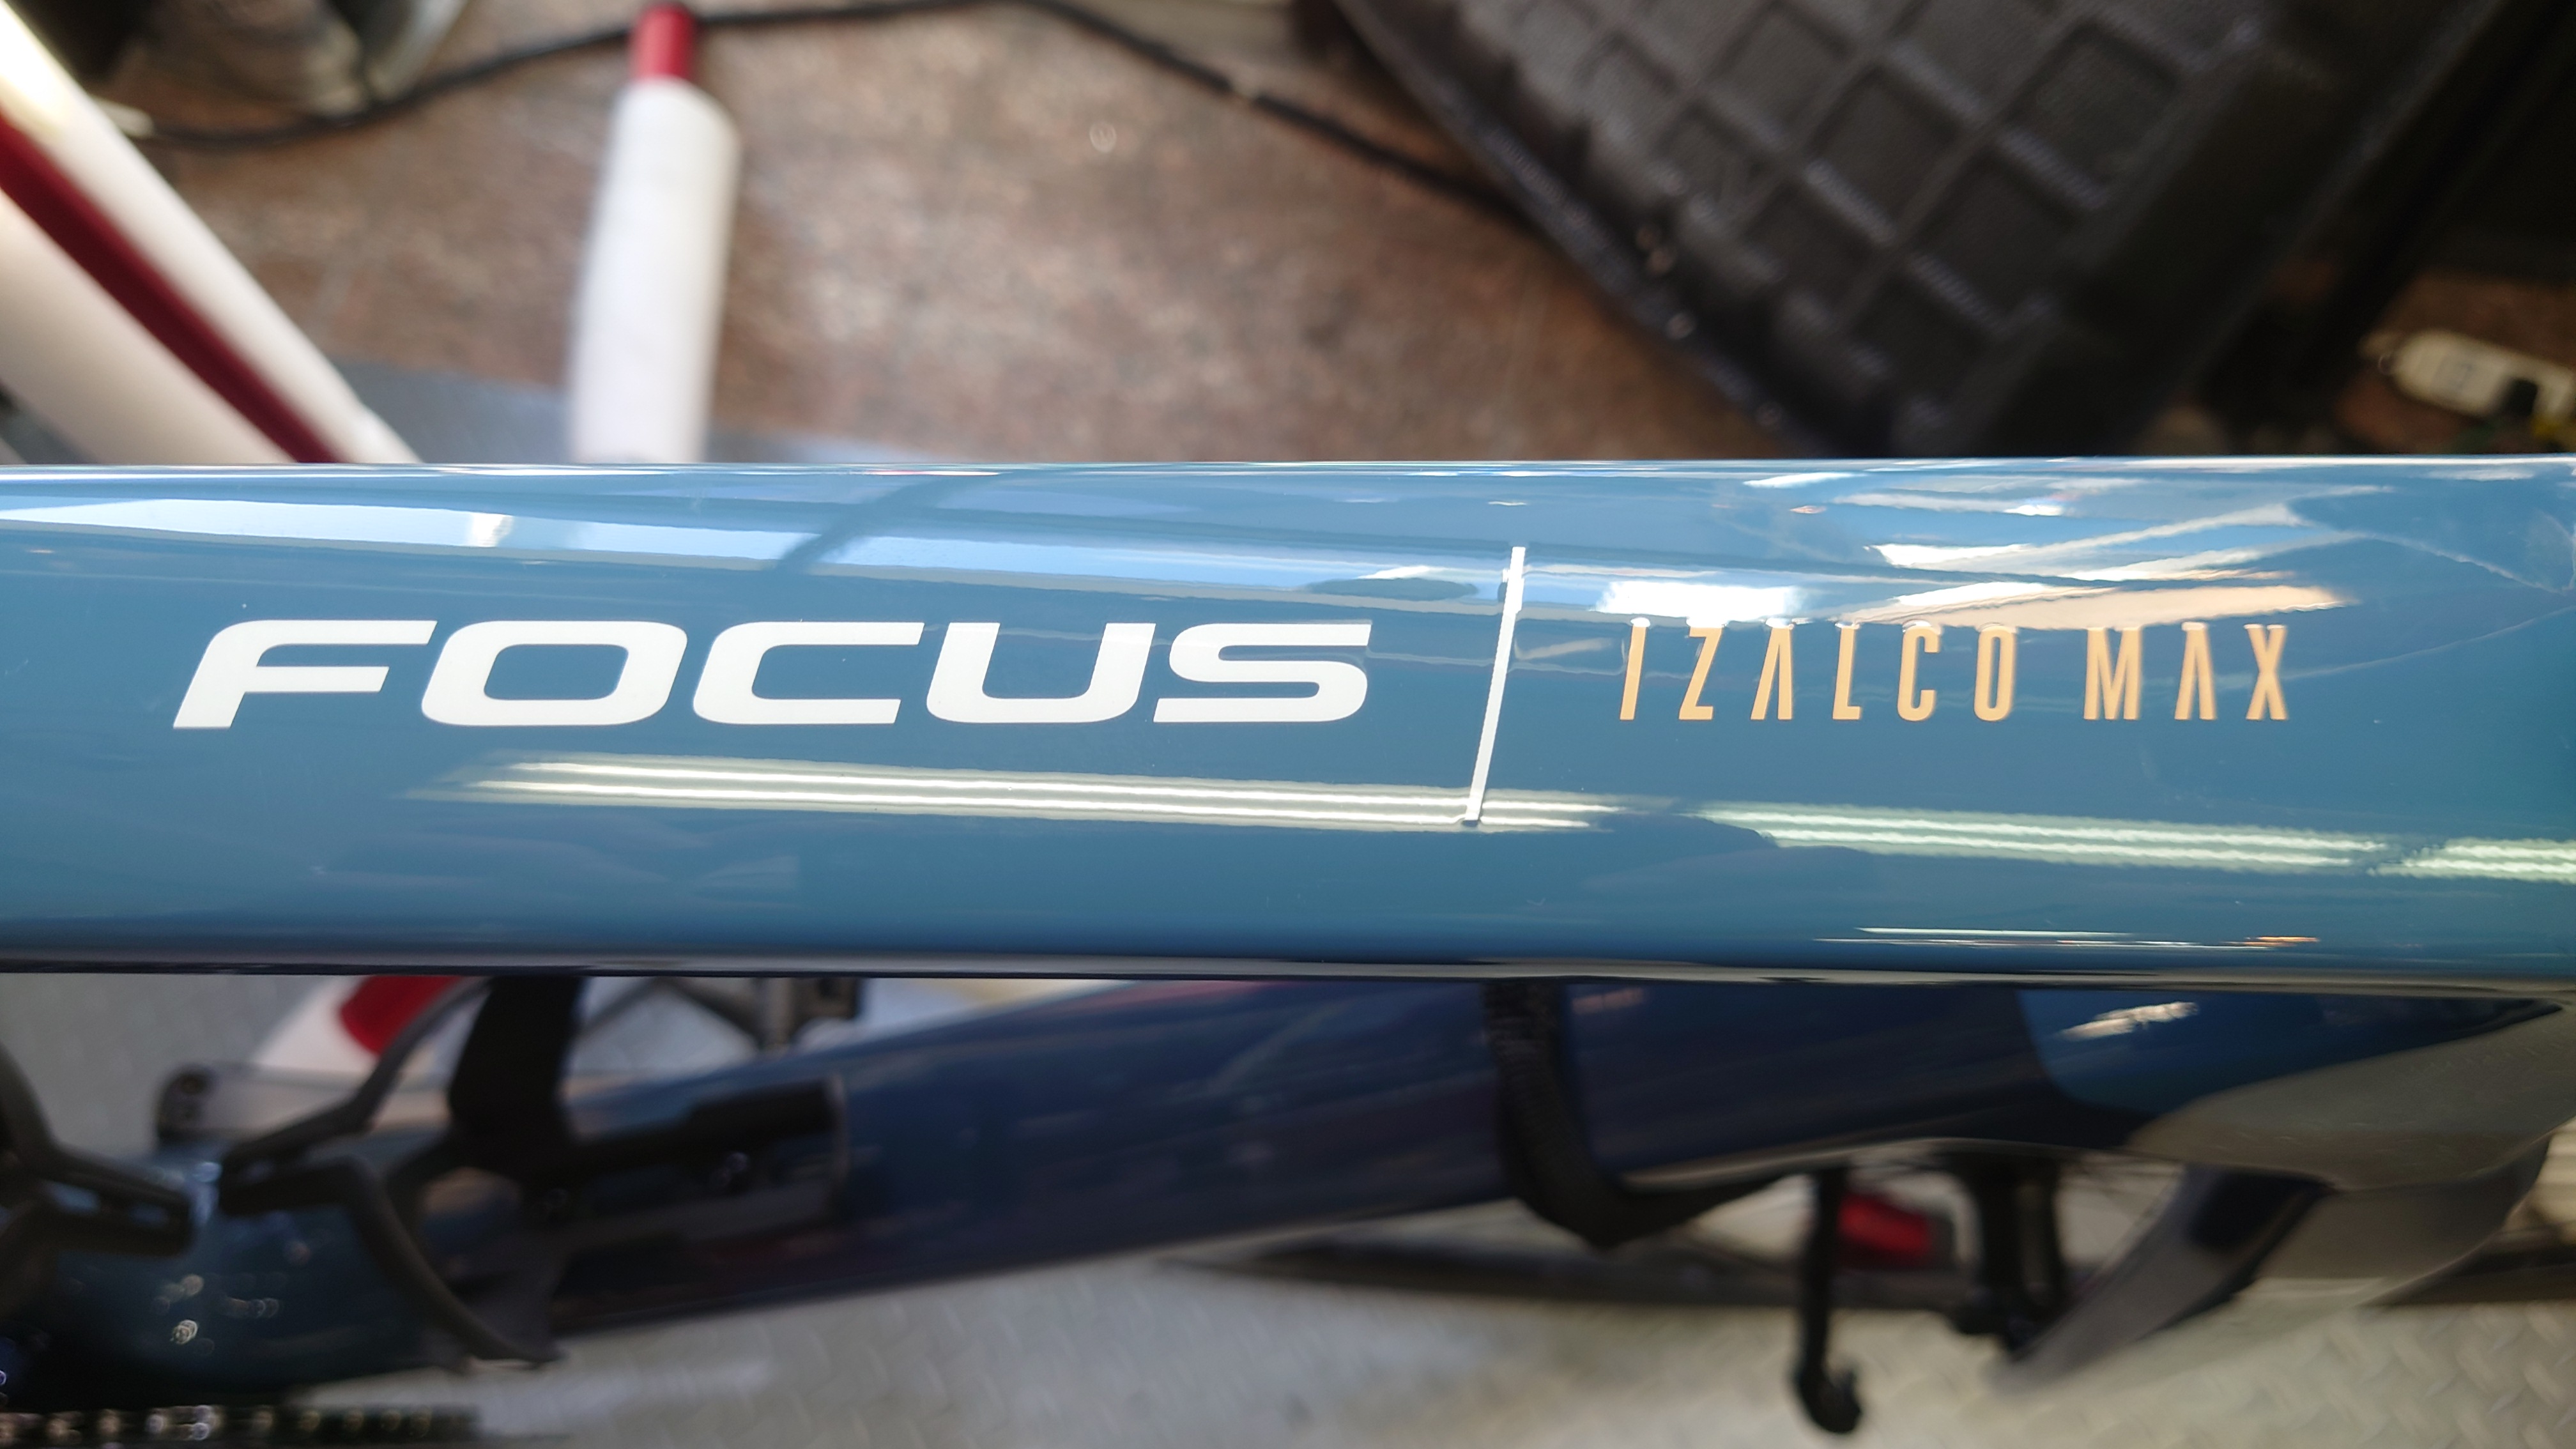 【FOCUS】「マイバイク」IZALCO MAX9組上がりました♪志木店に展示中です！ | 志木、新座、富士見、川越、所沢、さいたまでスポーツ自転車をお探しならY